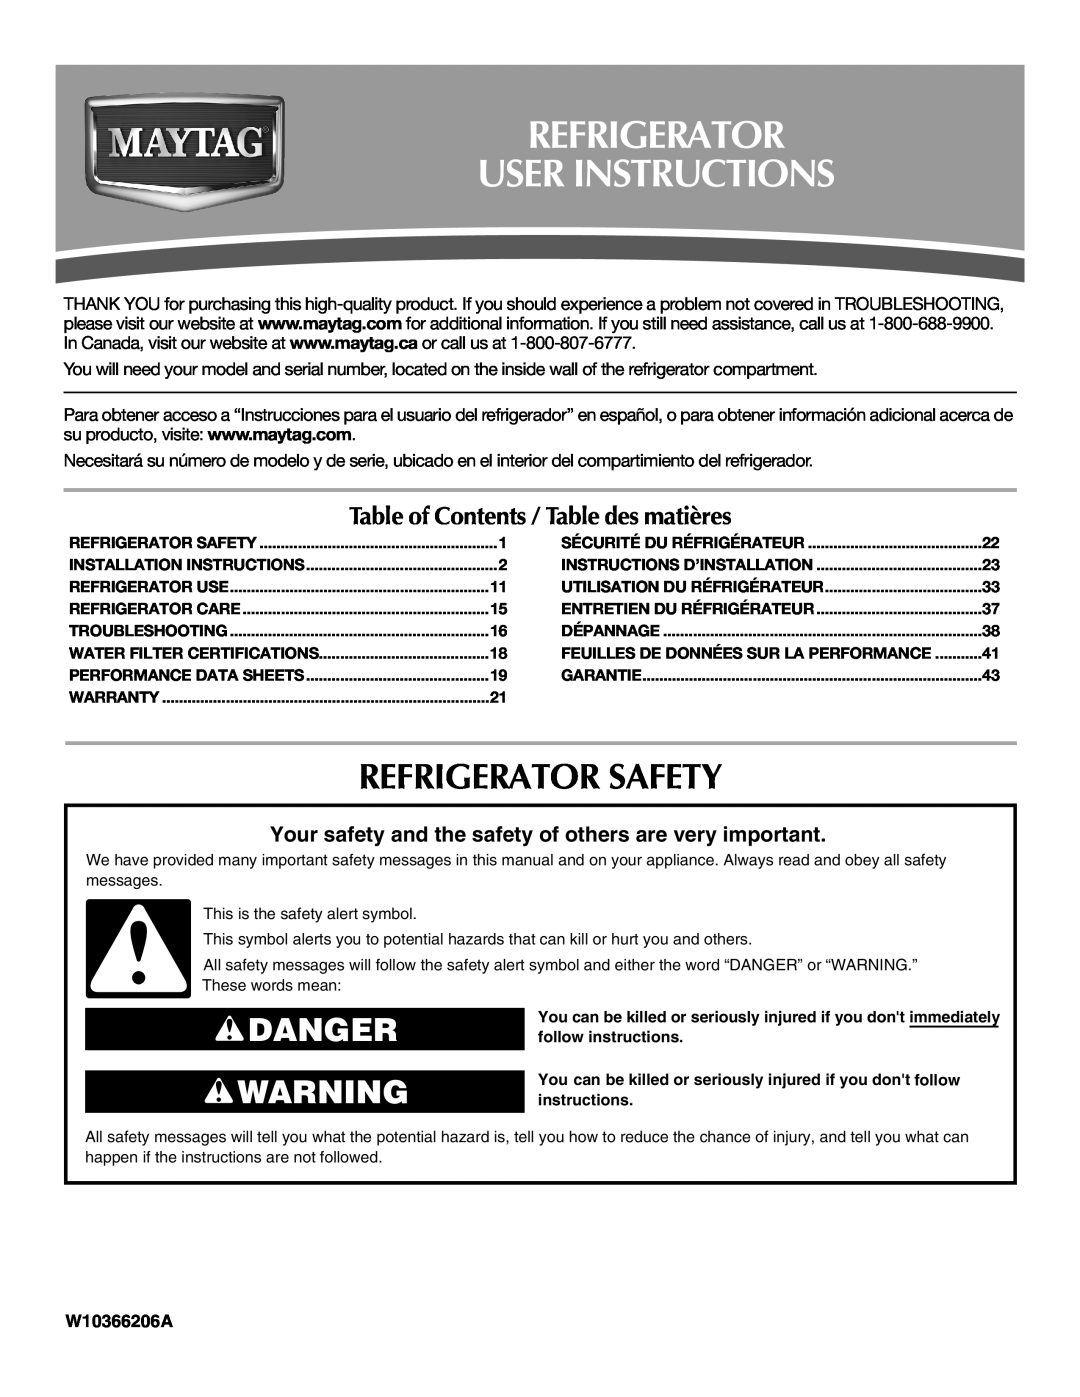 Maytag W10366206A installation instructions Refrigerator User Instructions, Refrigerator Safety, Danger 